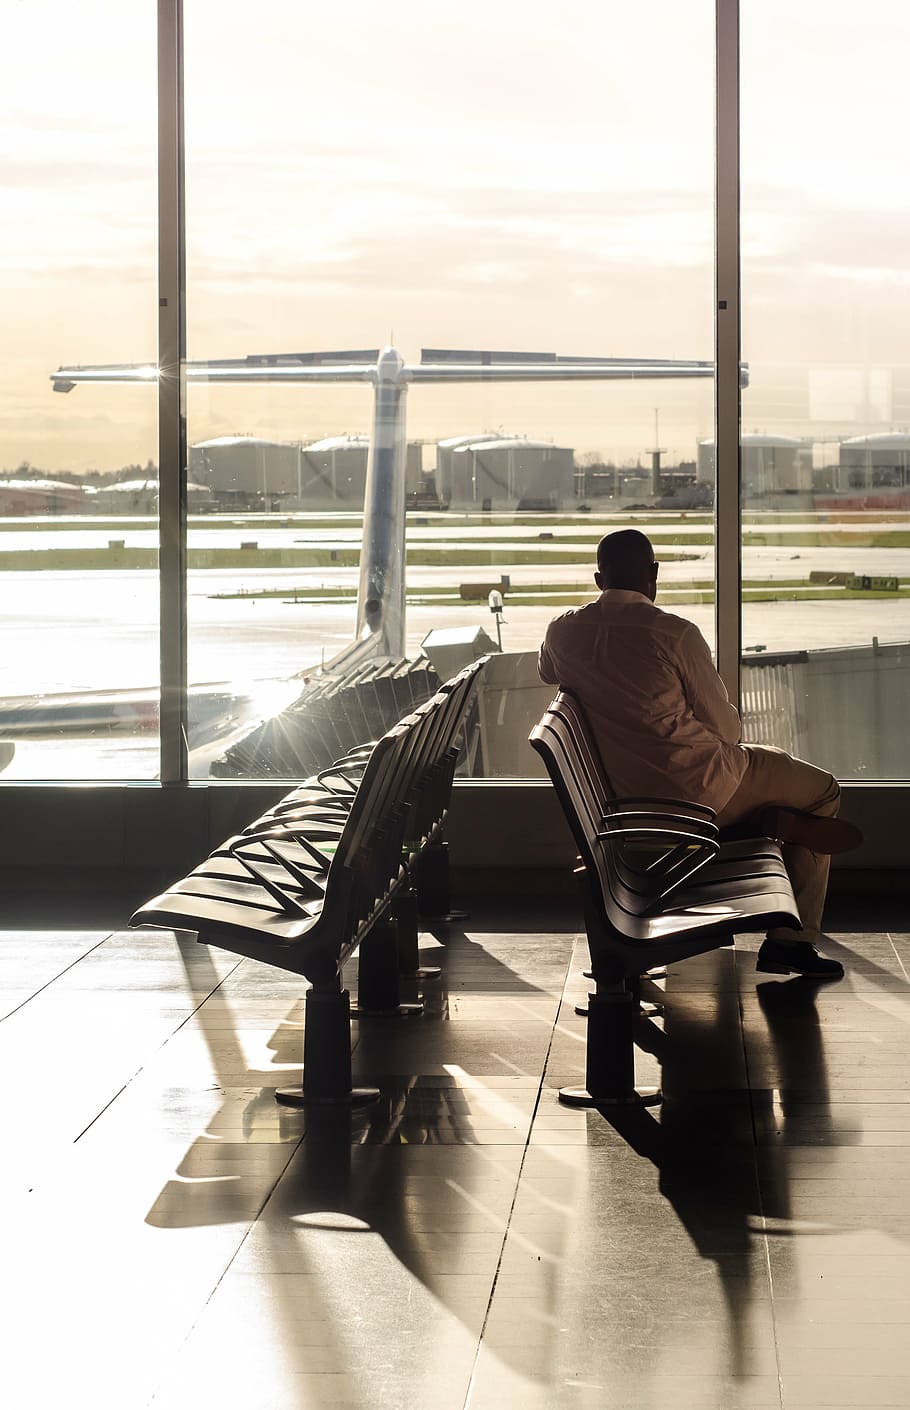 pria, putih, baju kemeja, celana, duduk, kursi geng, terminal, gerbang, menunggu, pesawat